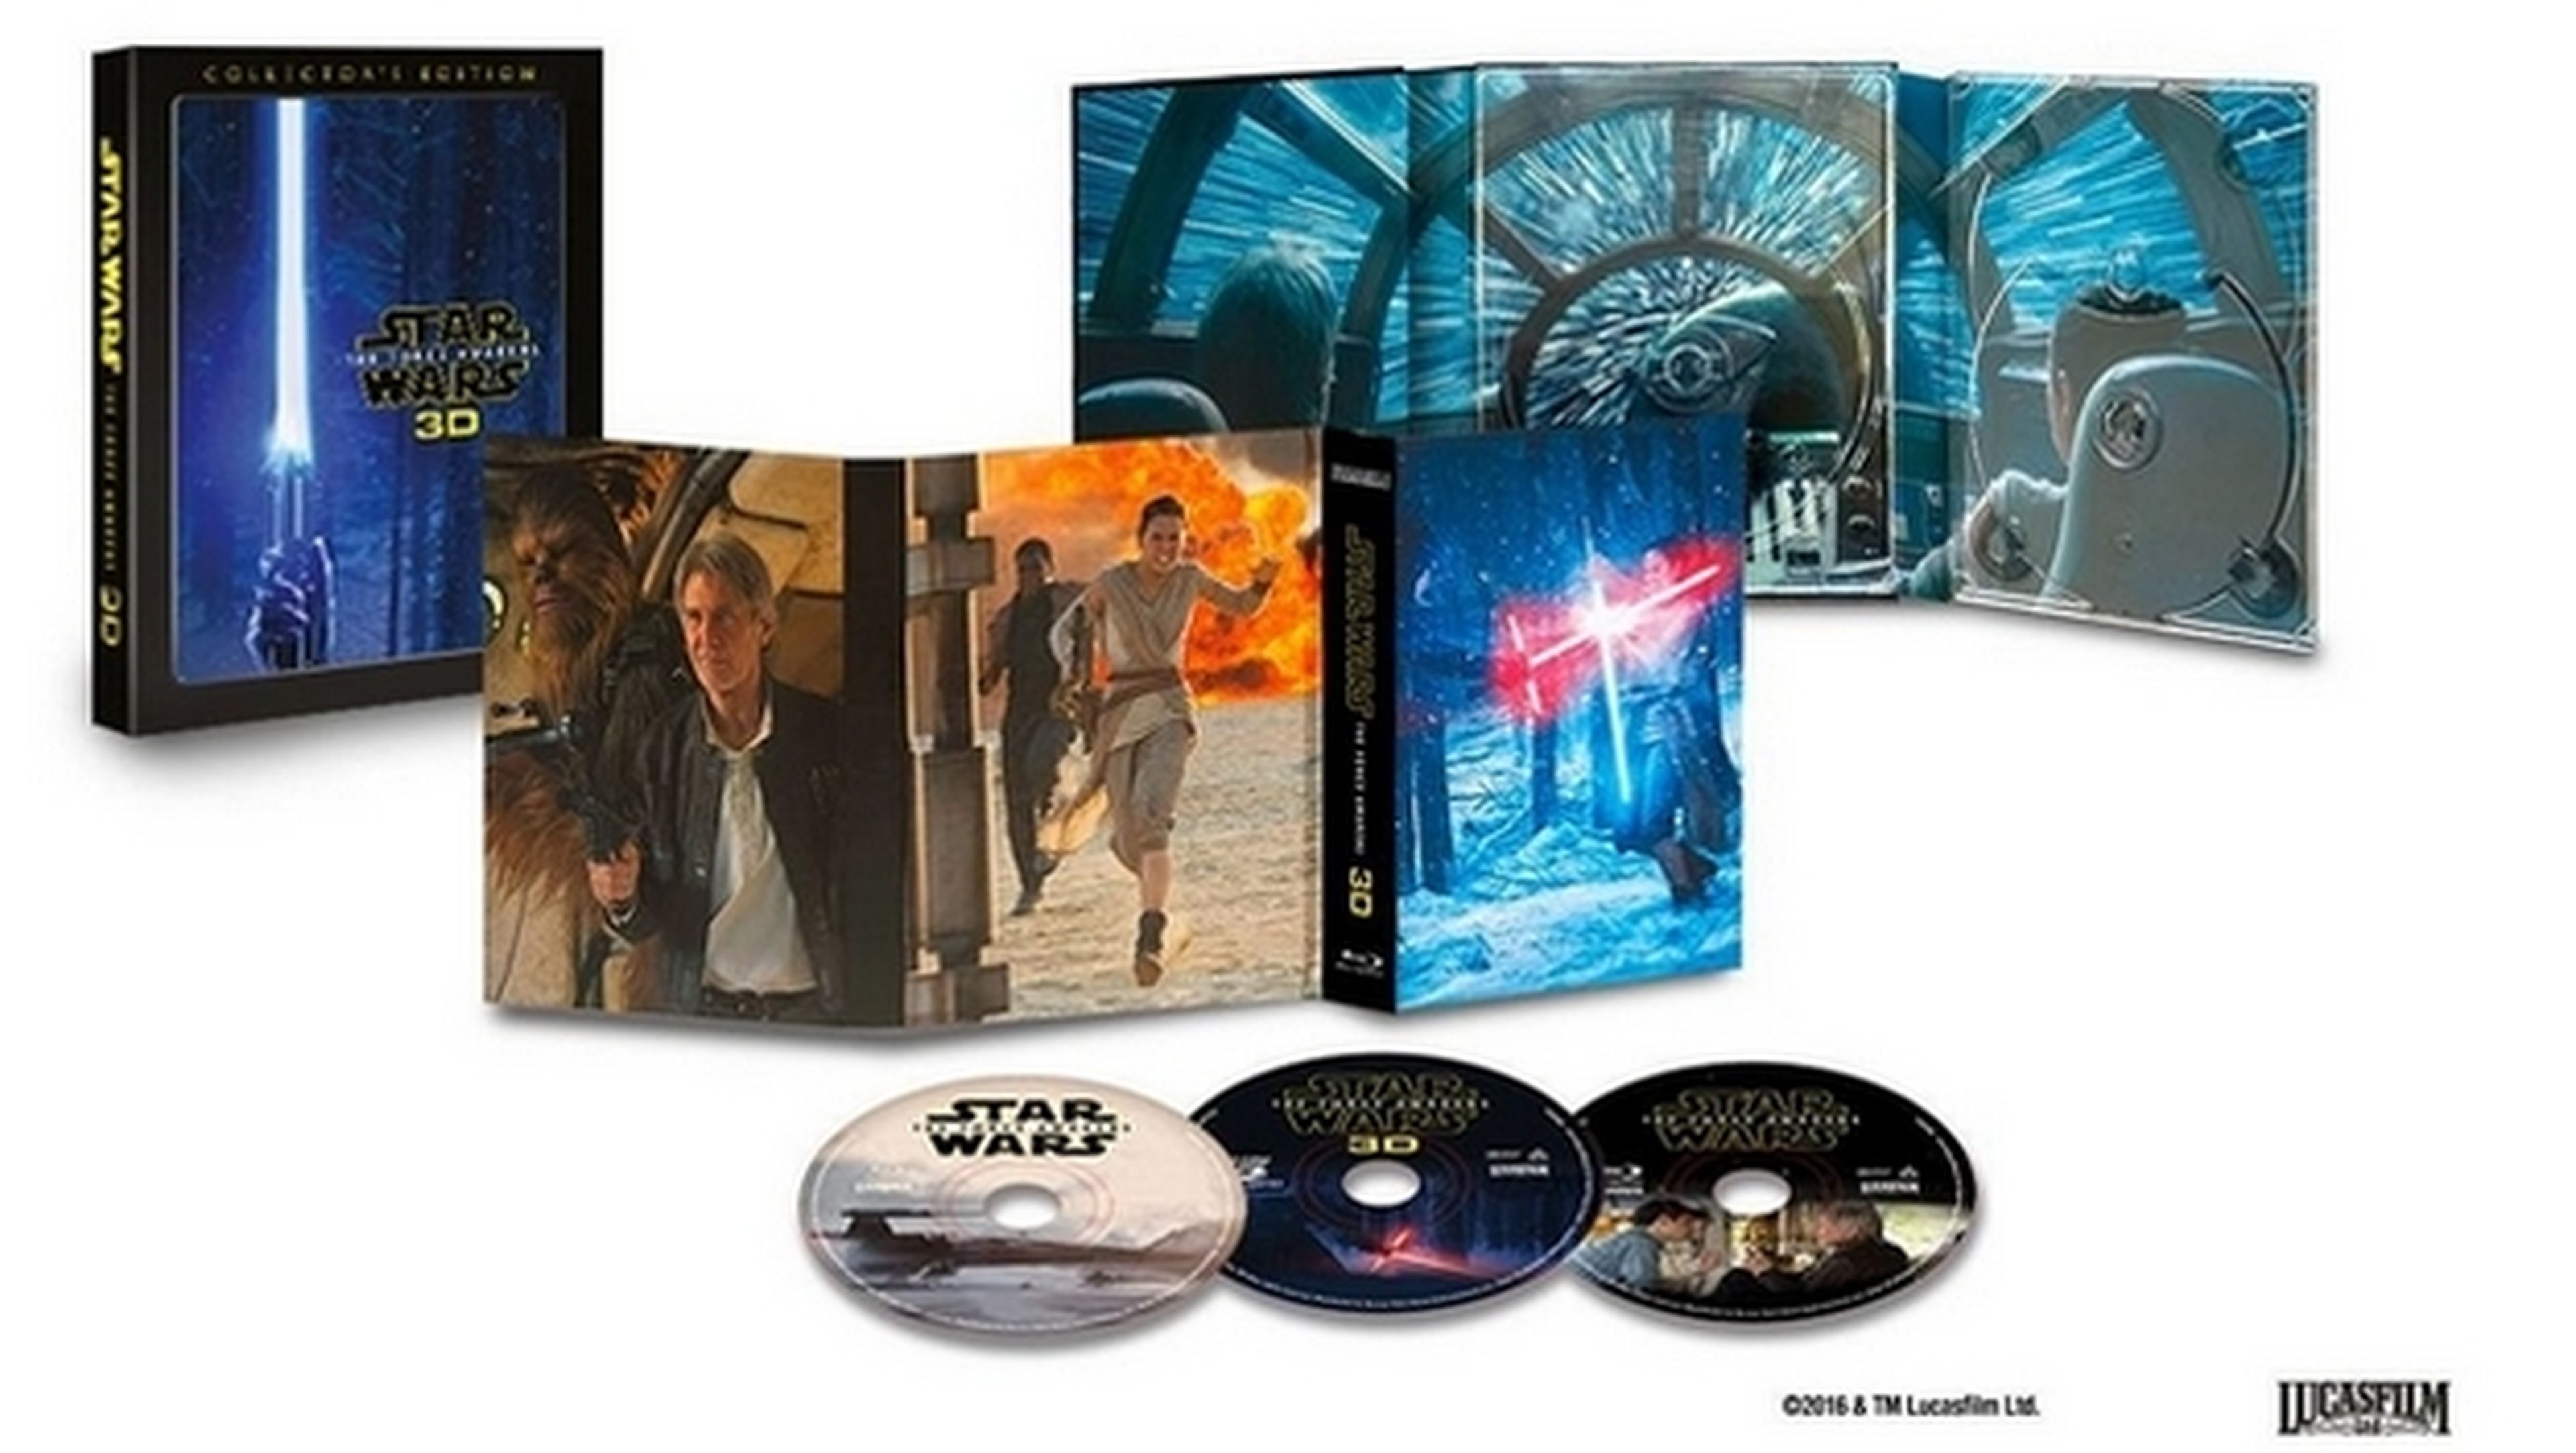 Star Wars El Despertar de la Fuerza en 3D, con nuevas escenas y extras